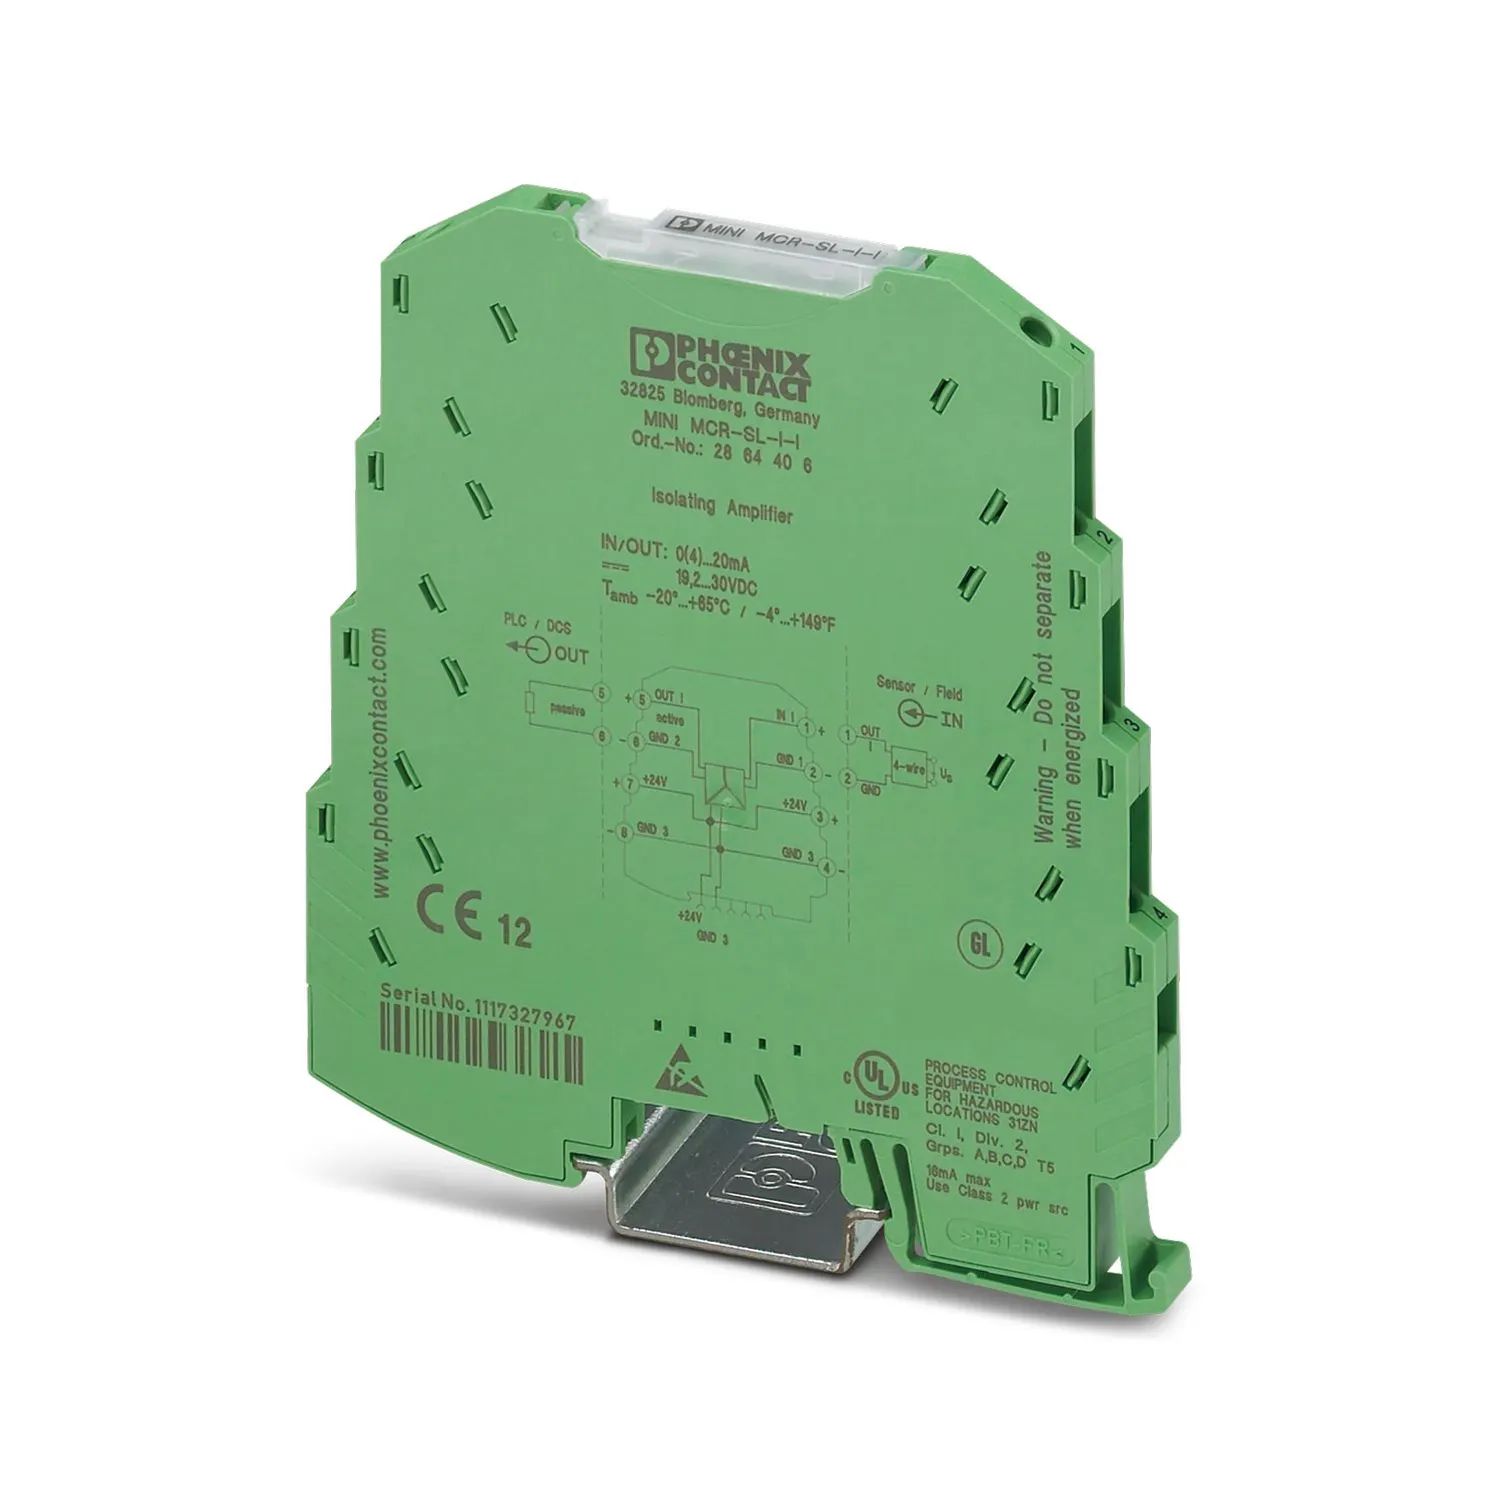 Мини-MCR-SL-I-I-сигнальный кондиционер Phoenix 2864406 для стандартных применений